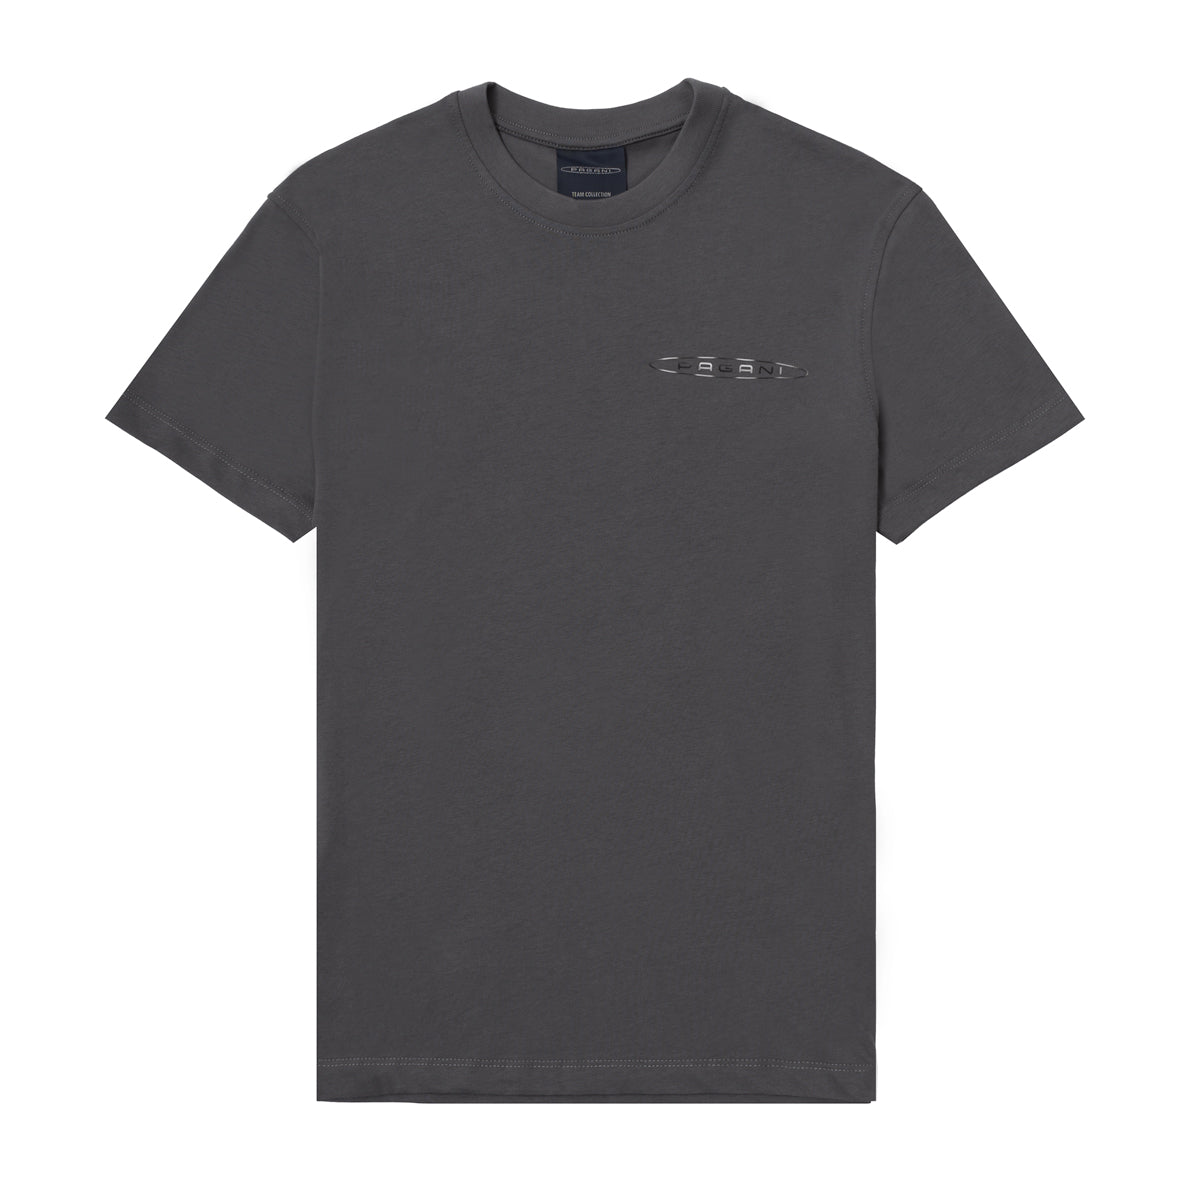 Herren-T-Shirt Mit Seitlichem Logo Grau | Team Collection